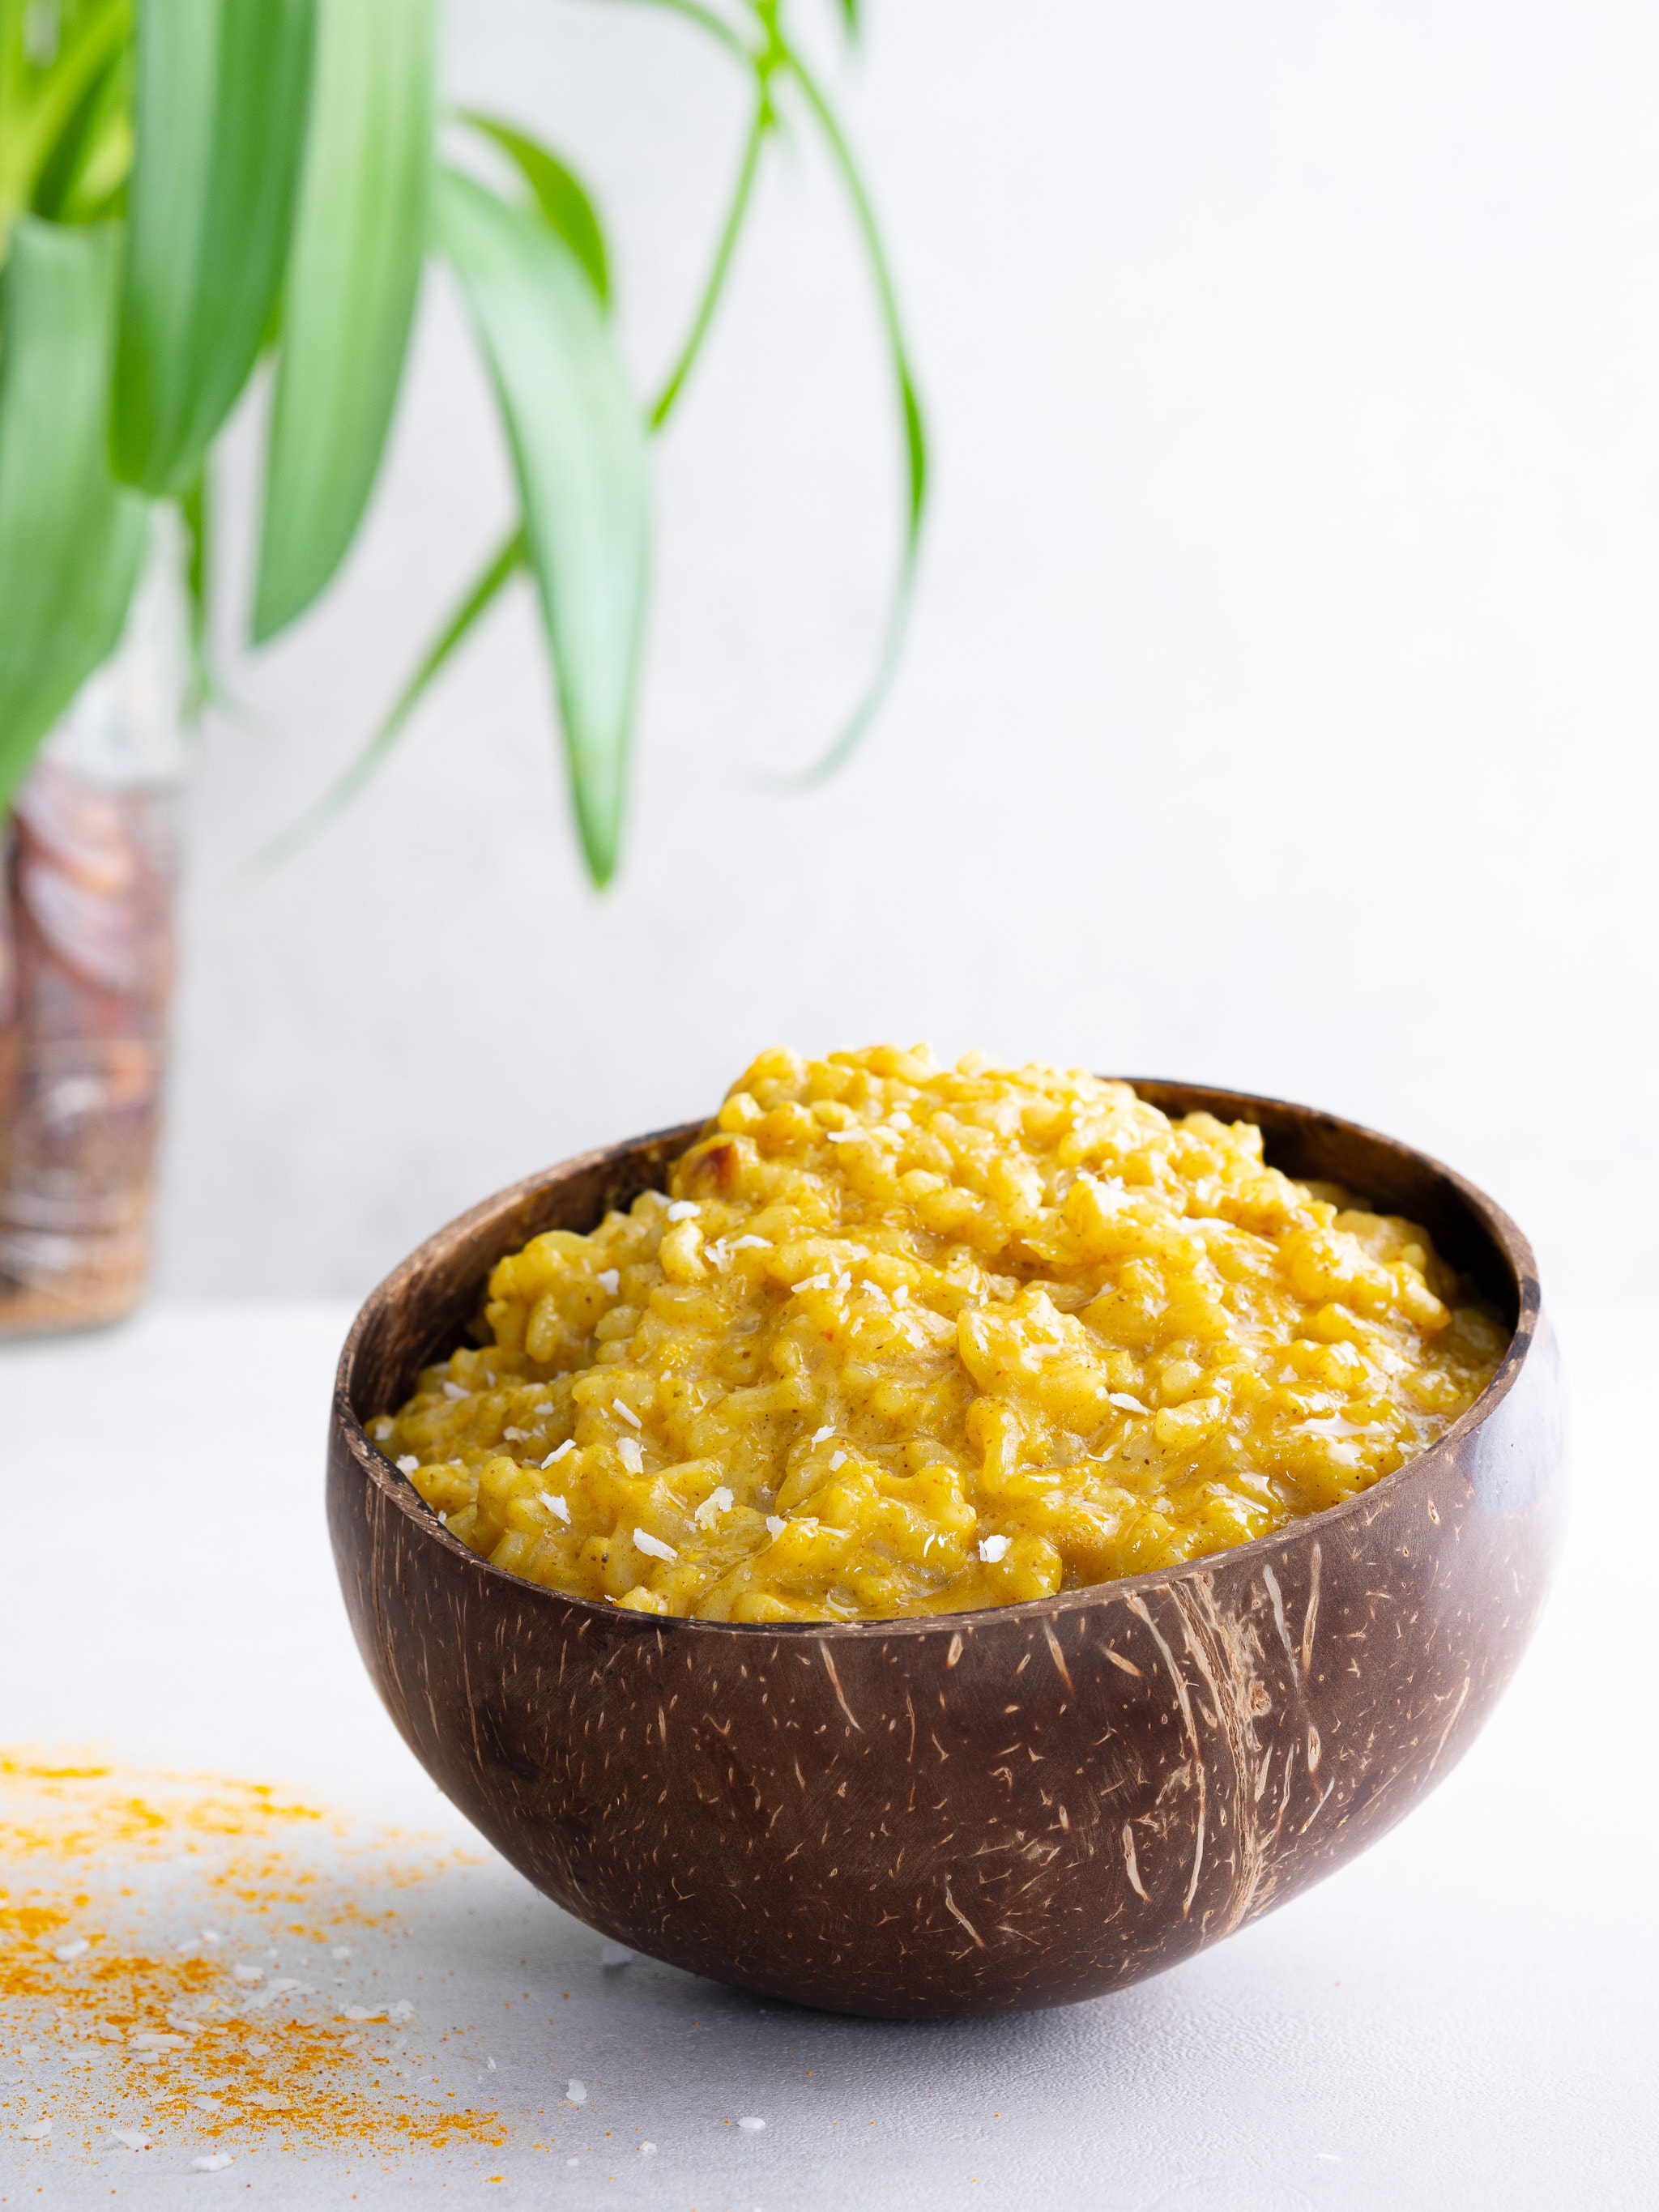 risotto curry coco vegan dans un bol en coco et quelques copeaux sur la table dans une ambiance exotique